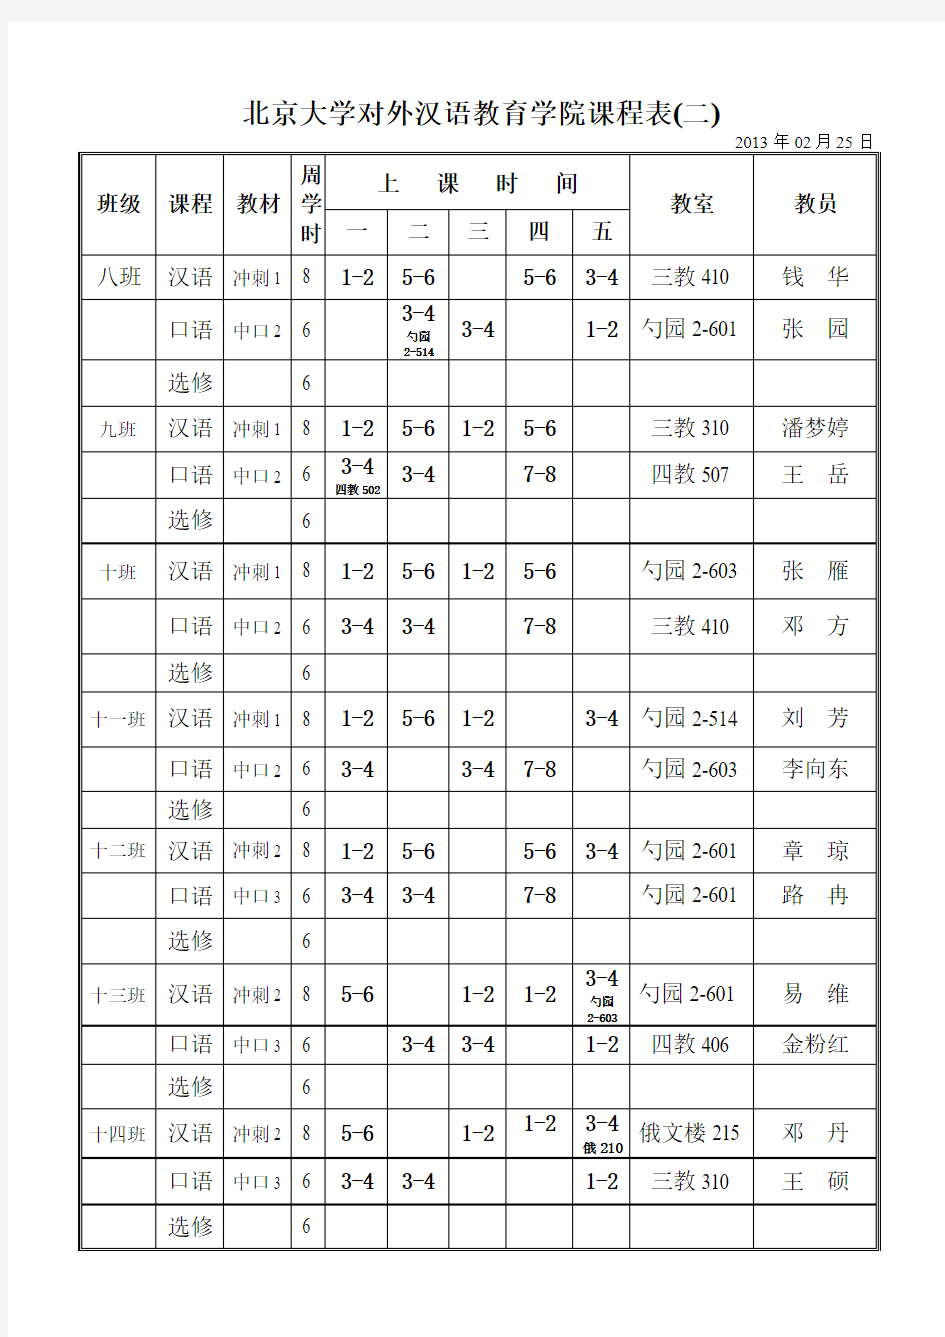 北京大学对外汉语教学中心课程表(一)